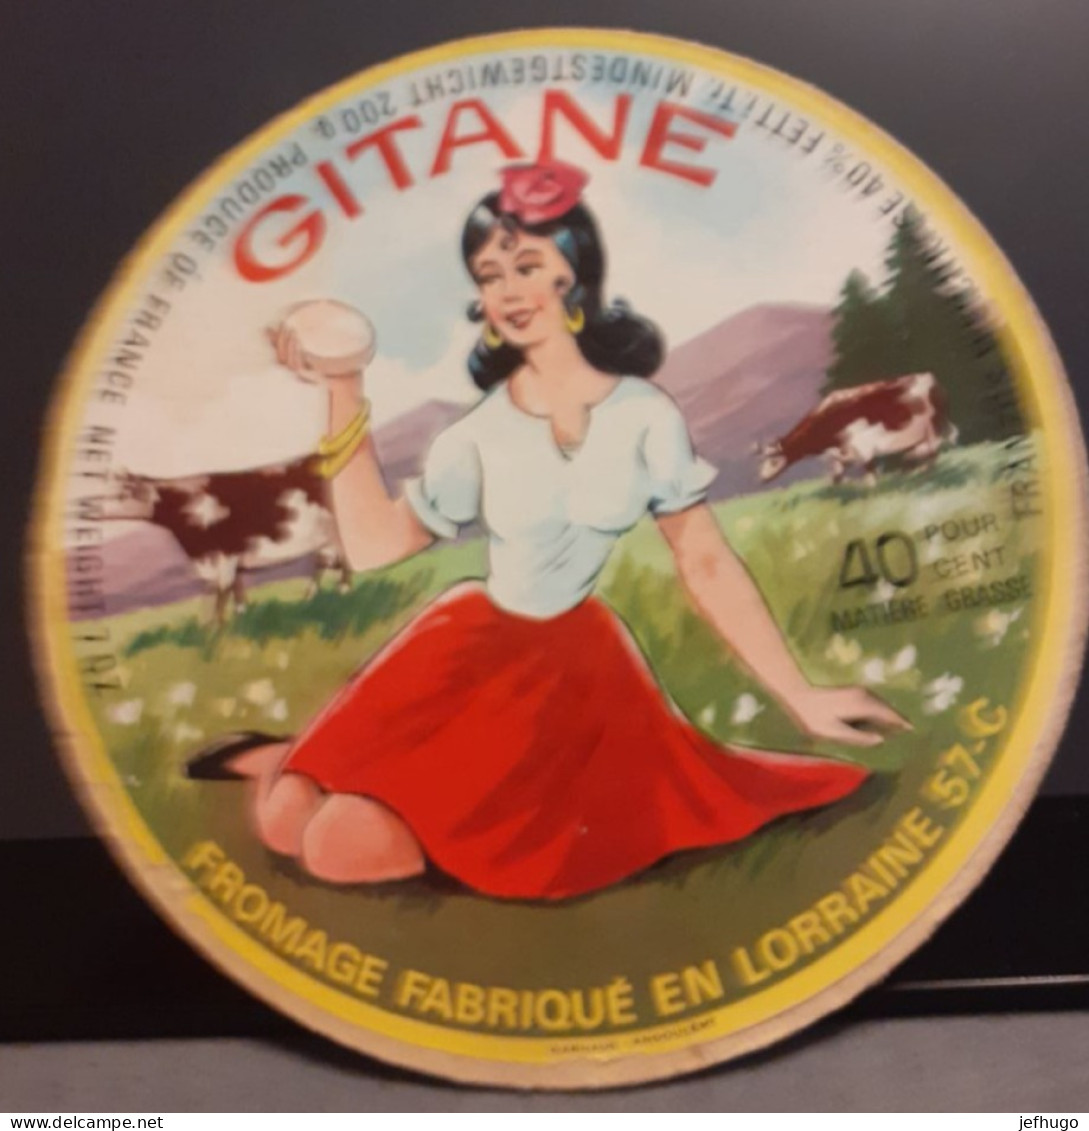 ETIQUETTE FROMAGE GITANE . FABRIQUE EN LORRAINE 57 - Fromage